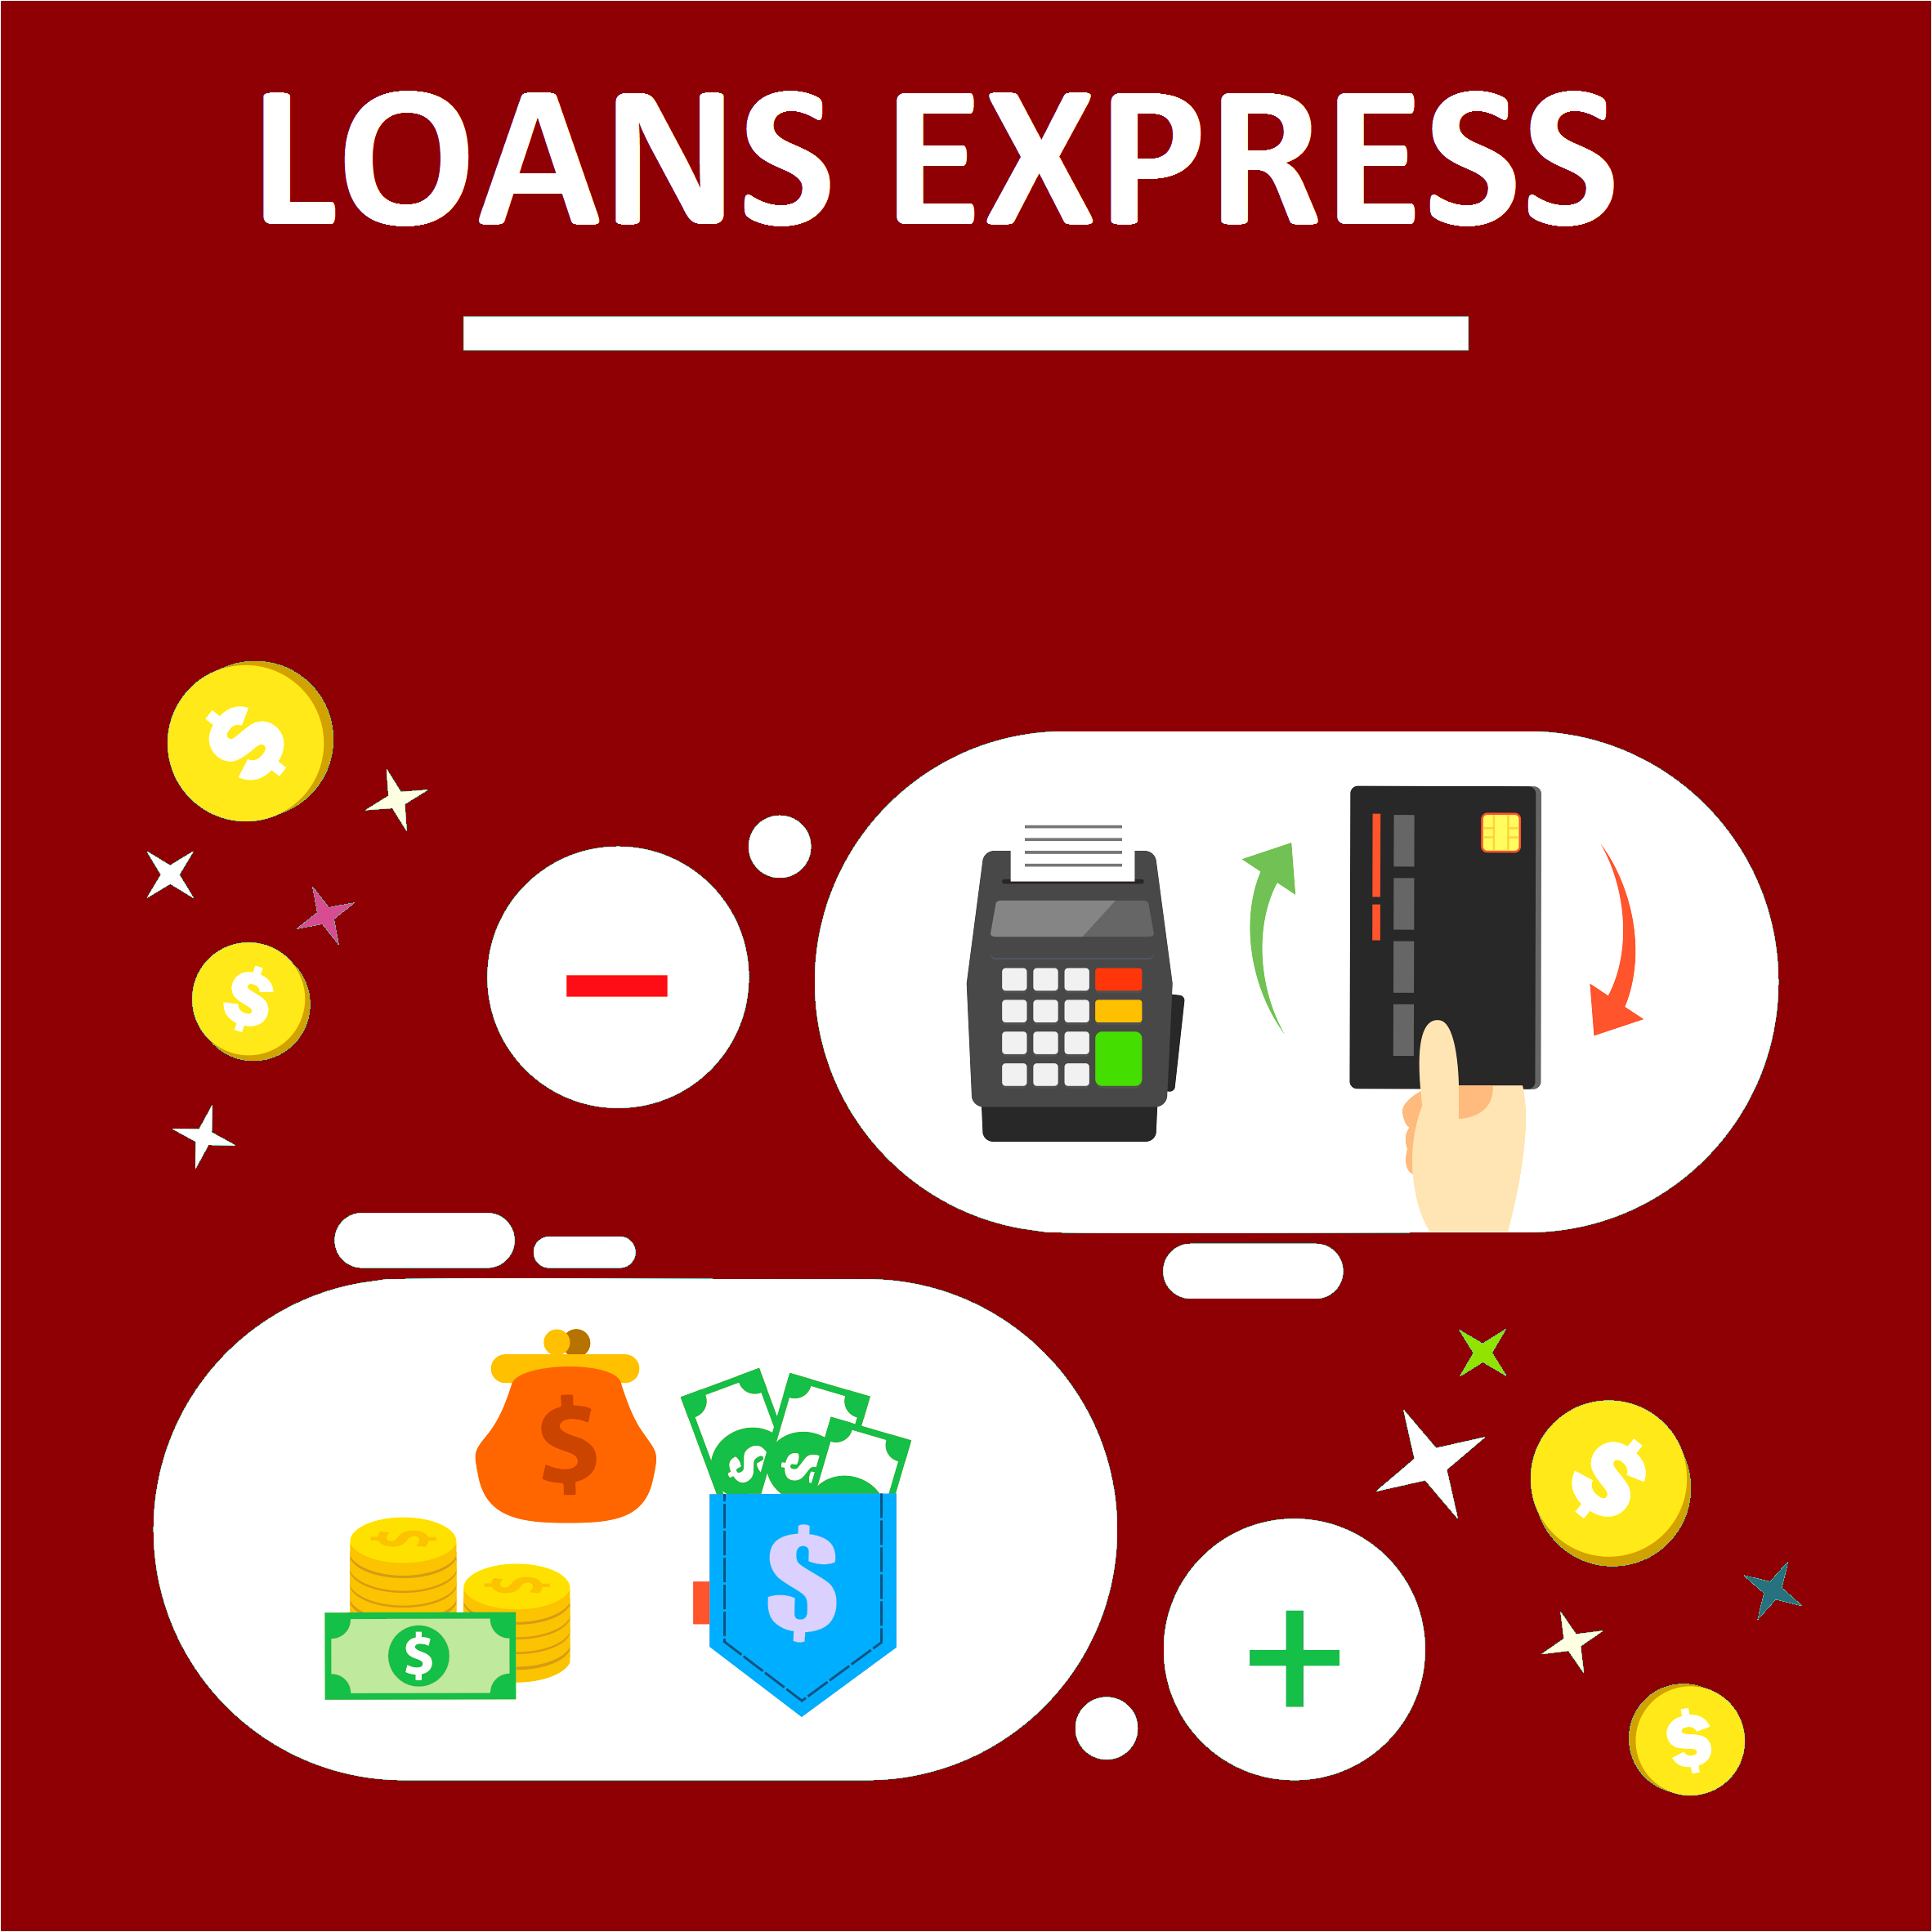 Loans Express